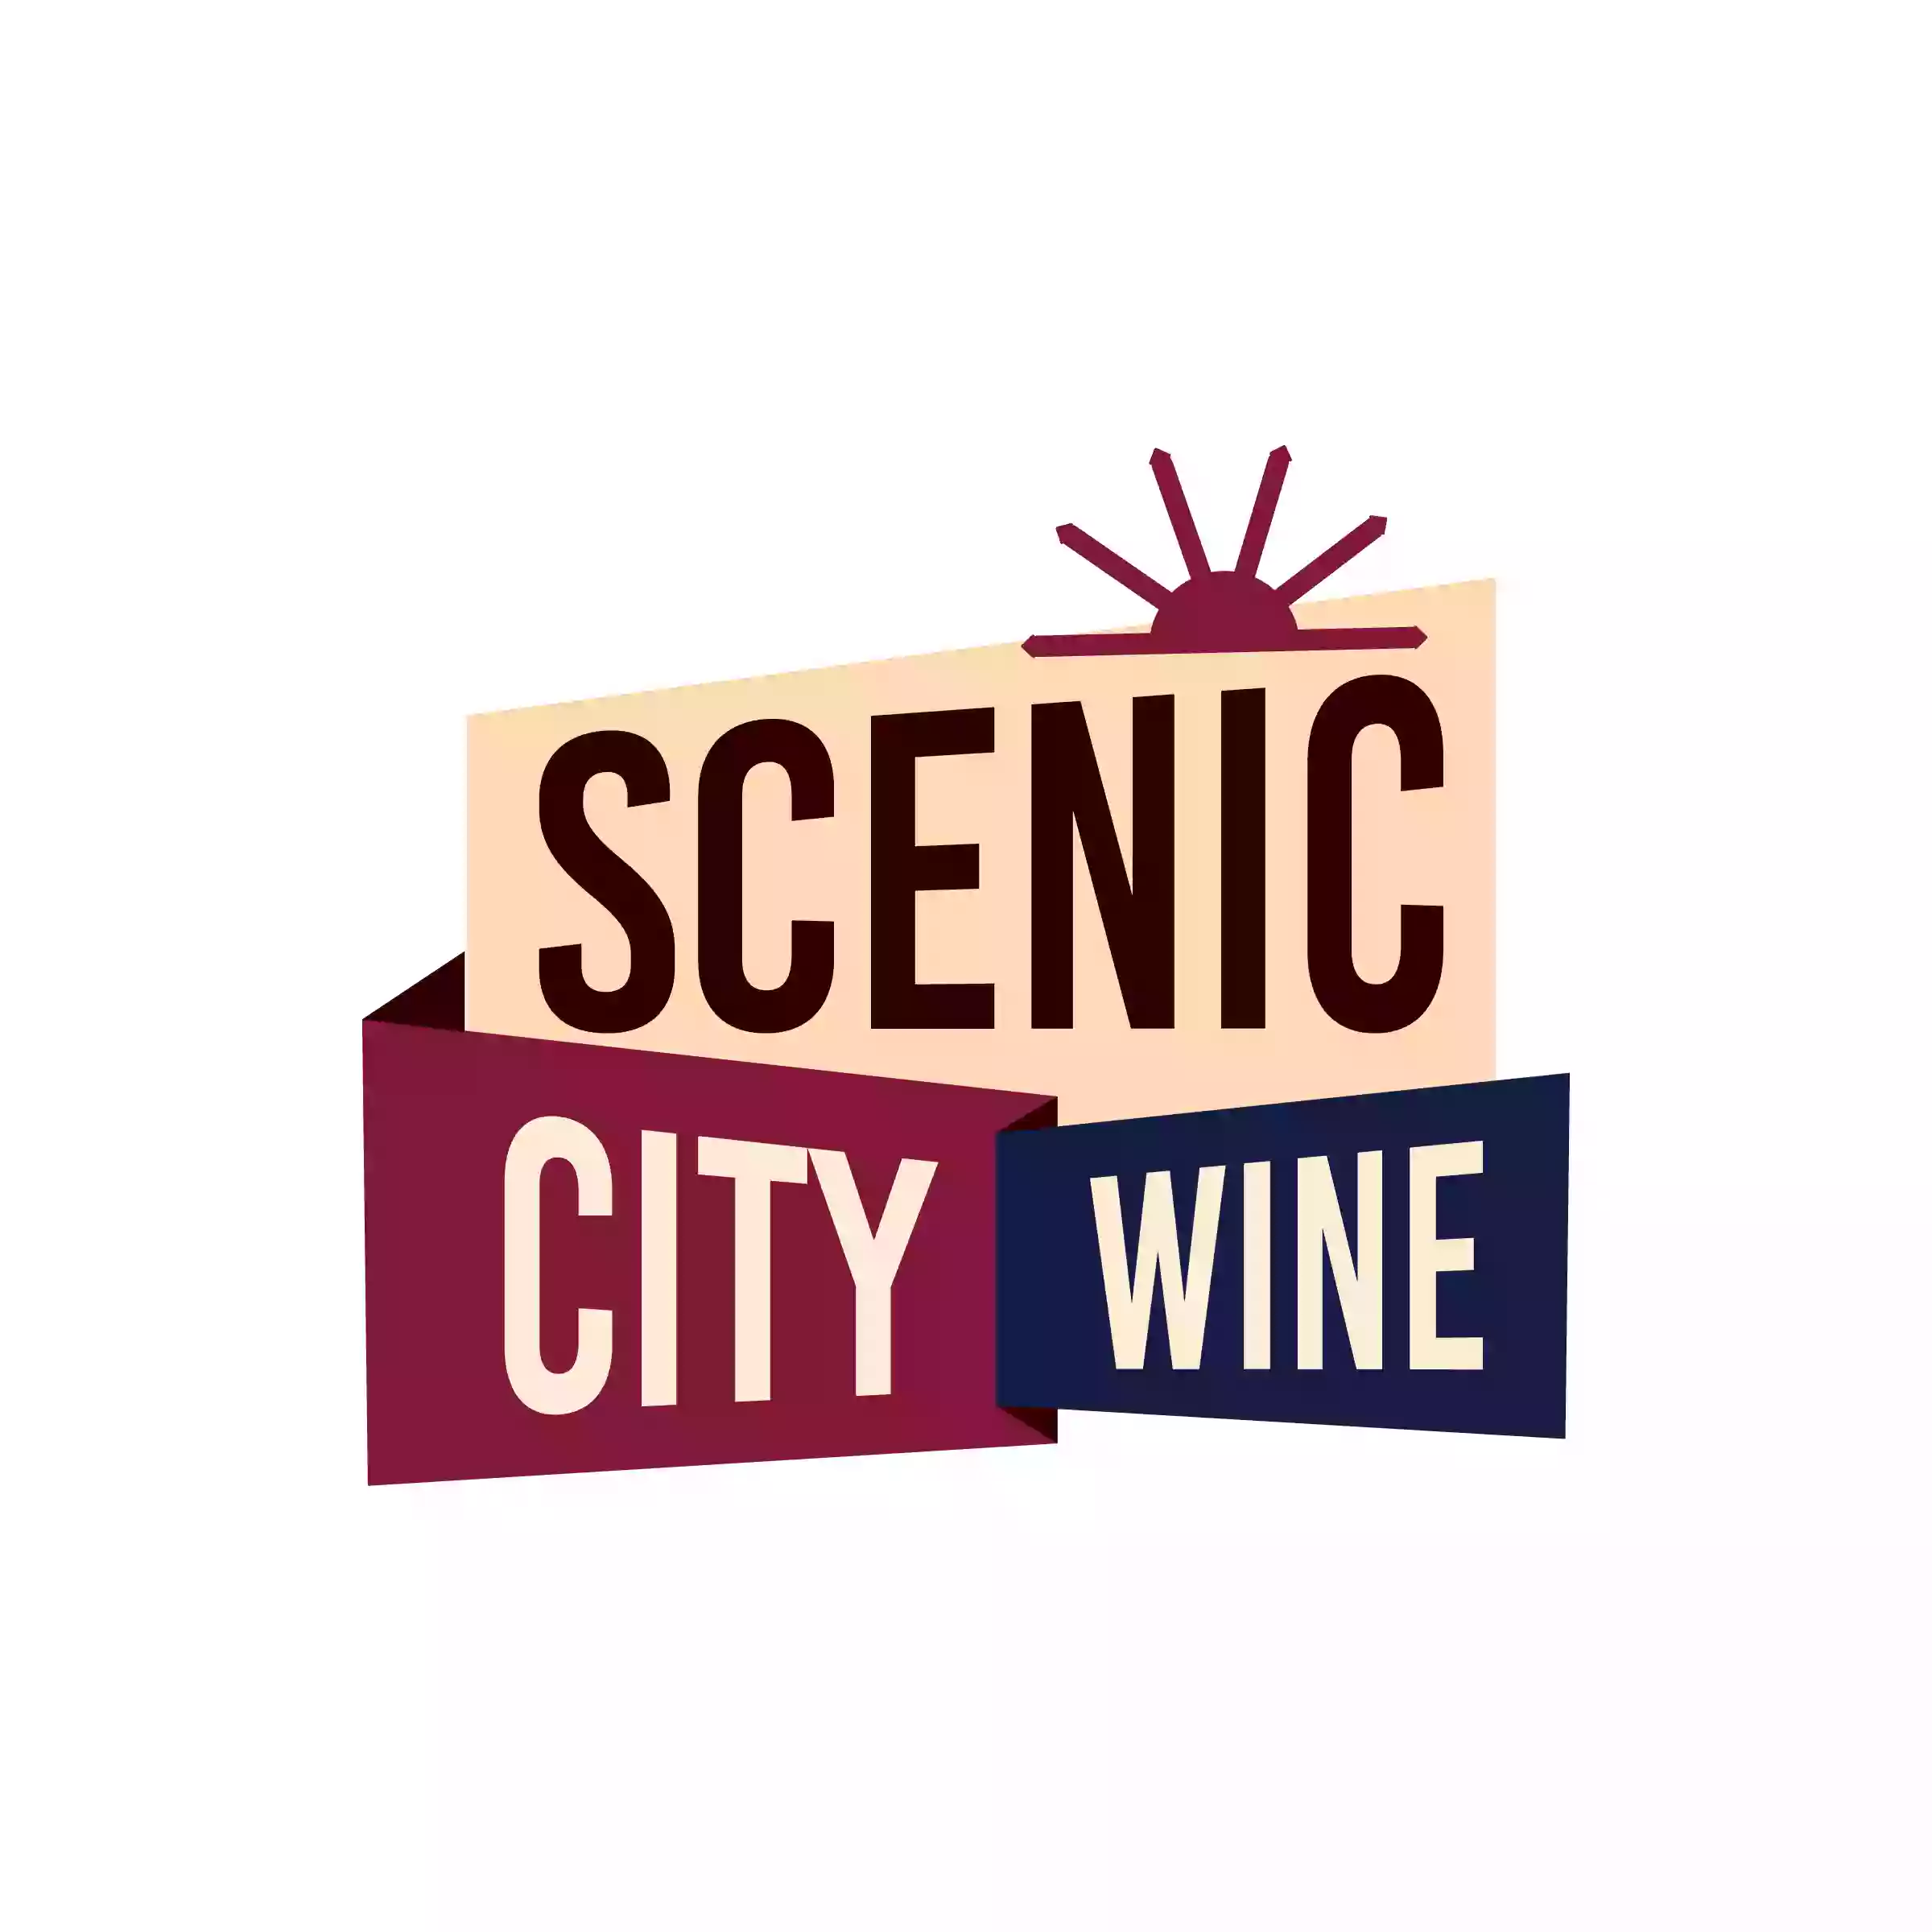 Scenic City Wine